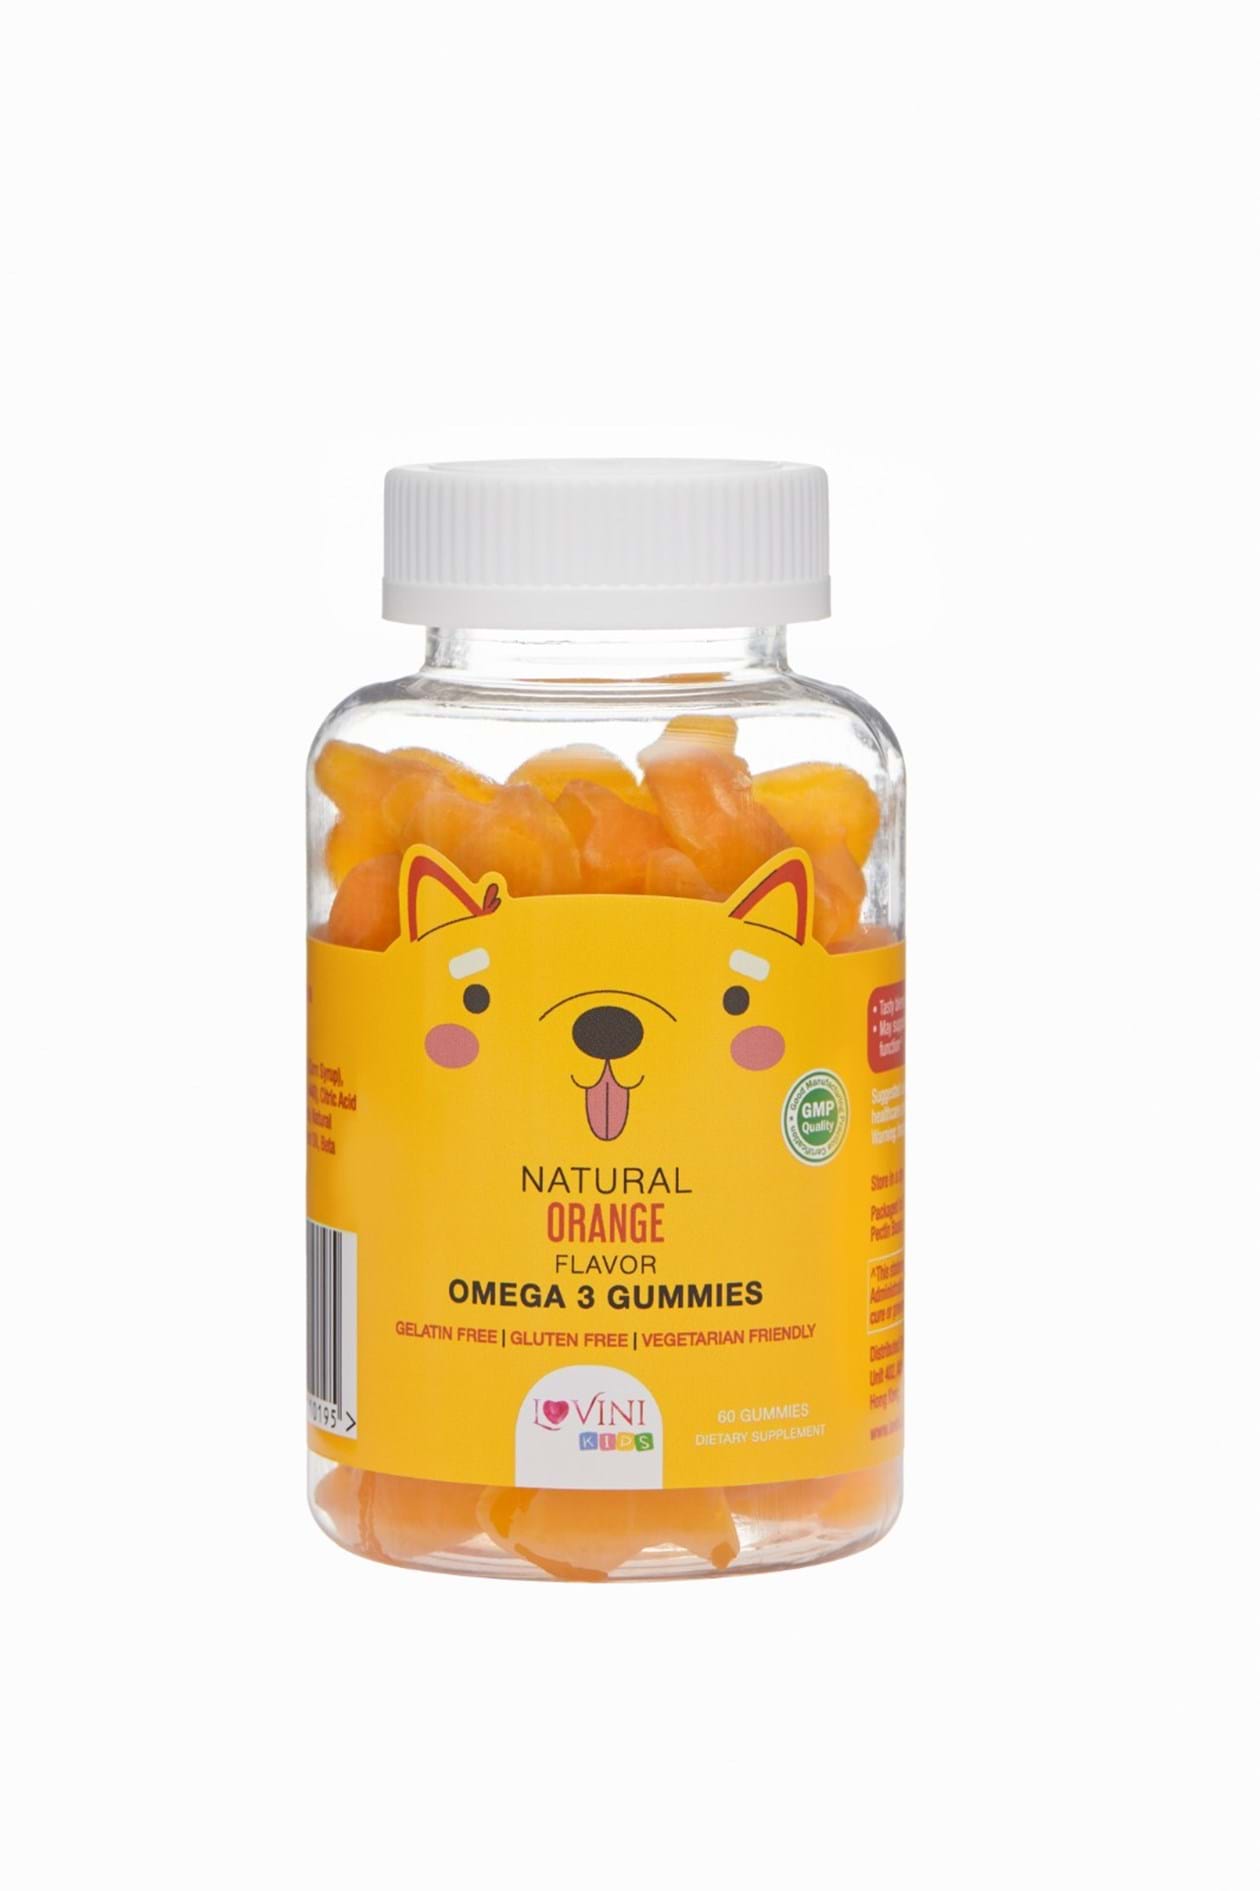 LoviniKids - Omega 3 Gummies (60 Gummies) (Delivery Product)